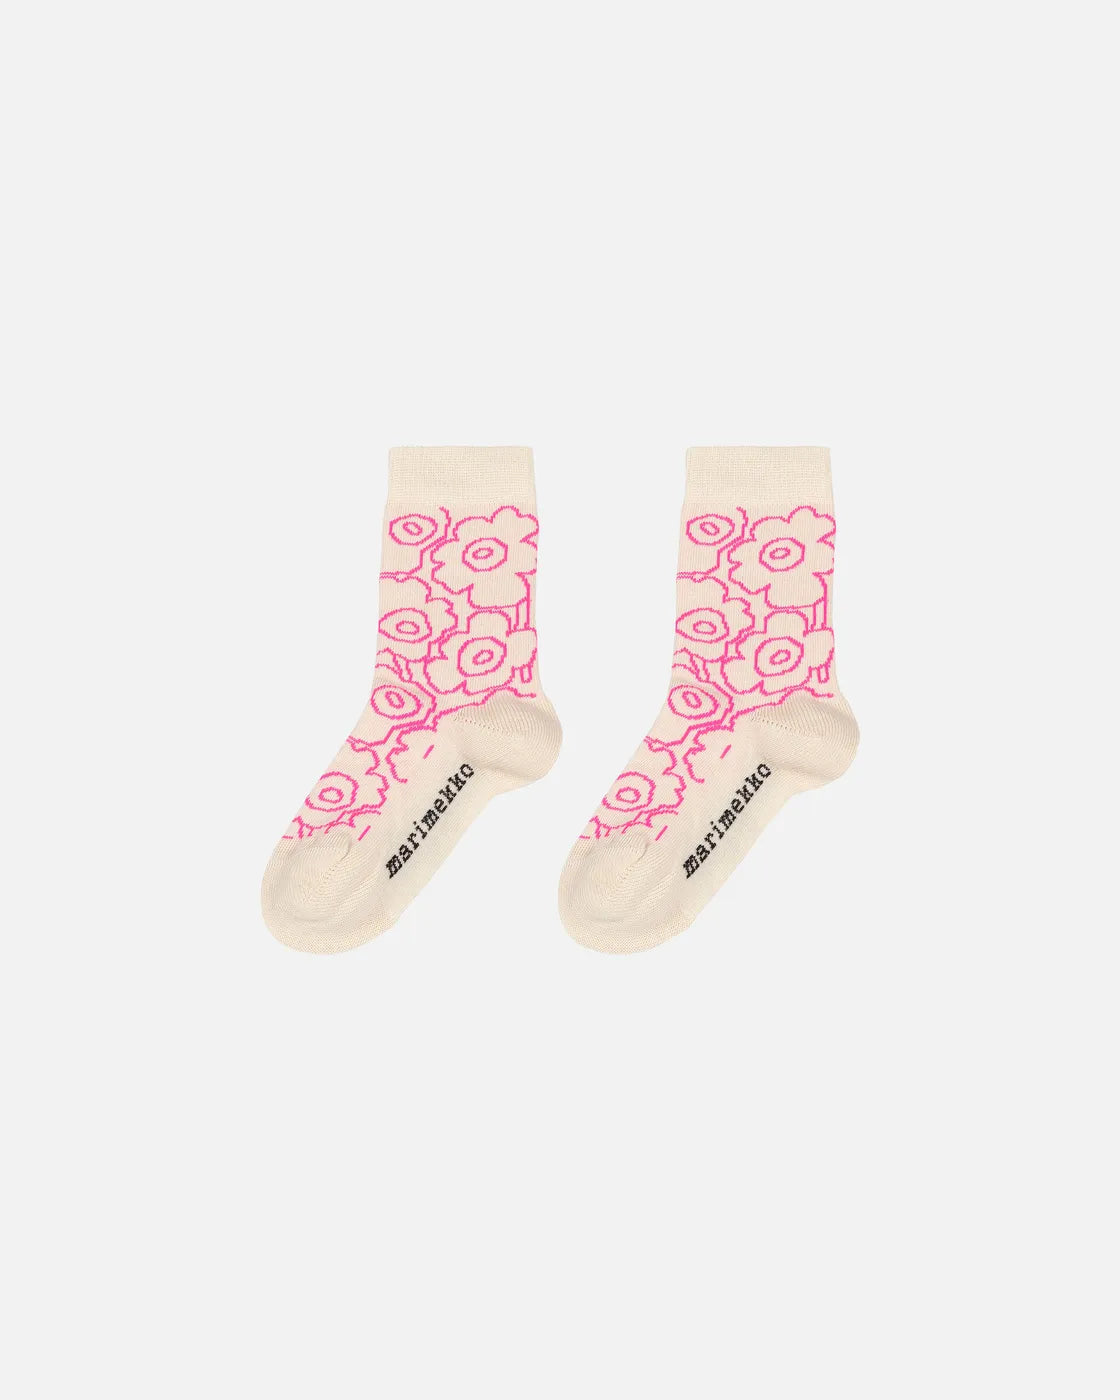 Marimekko Makeinen Piirto Unikko Baby Socks - Cream/Neon Pink